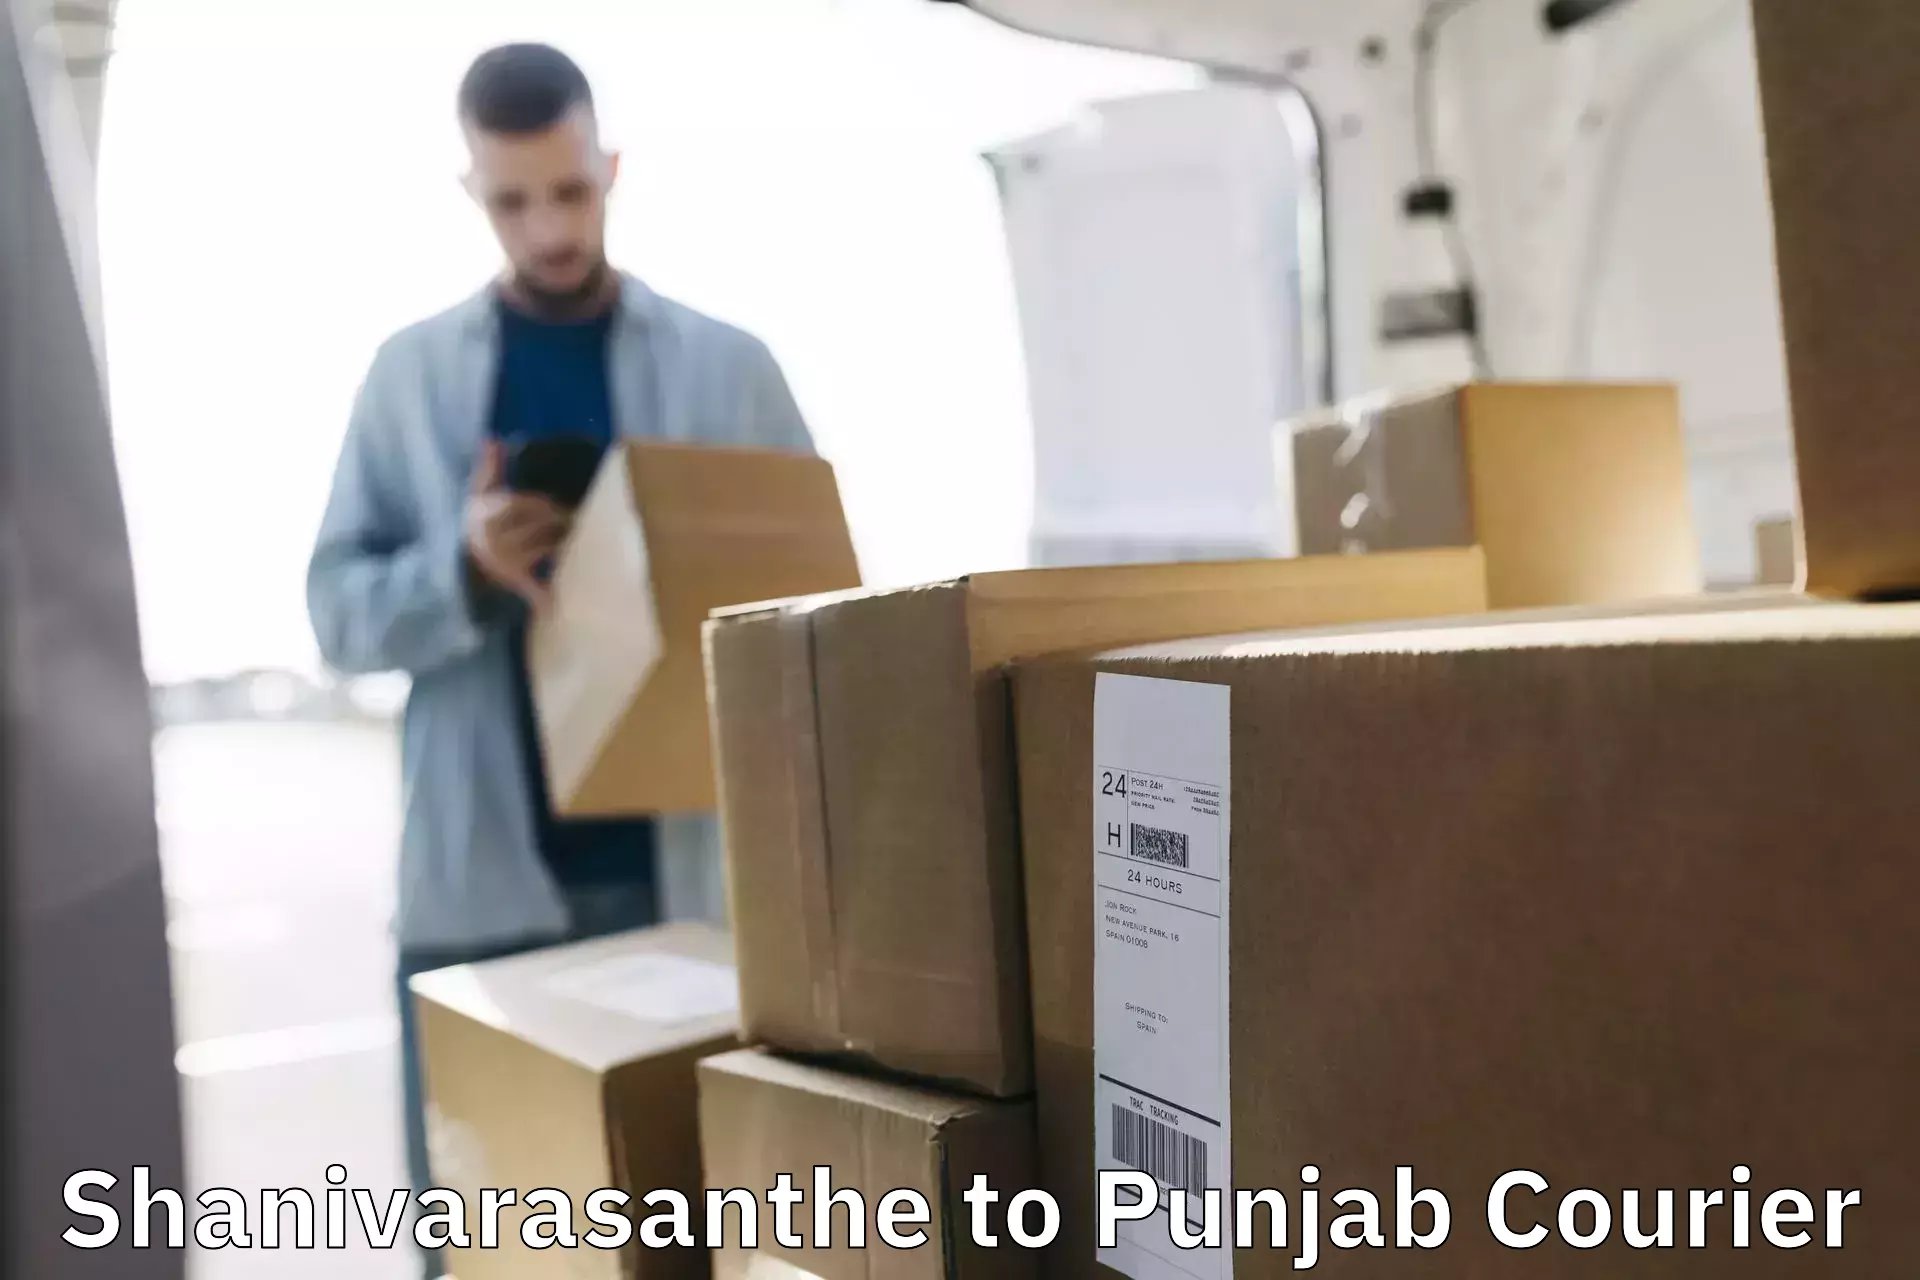 Premium courier solutions Shanivarasanthe to Nawanshahr